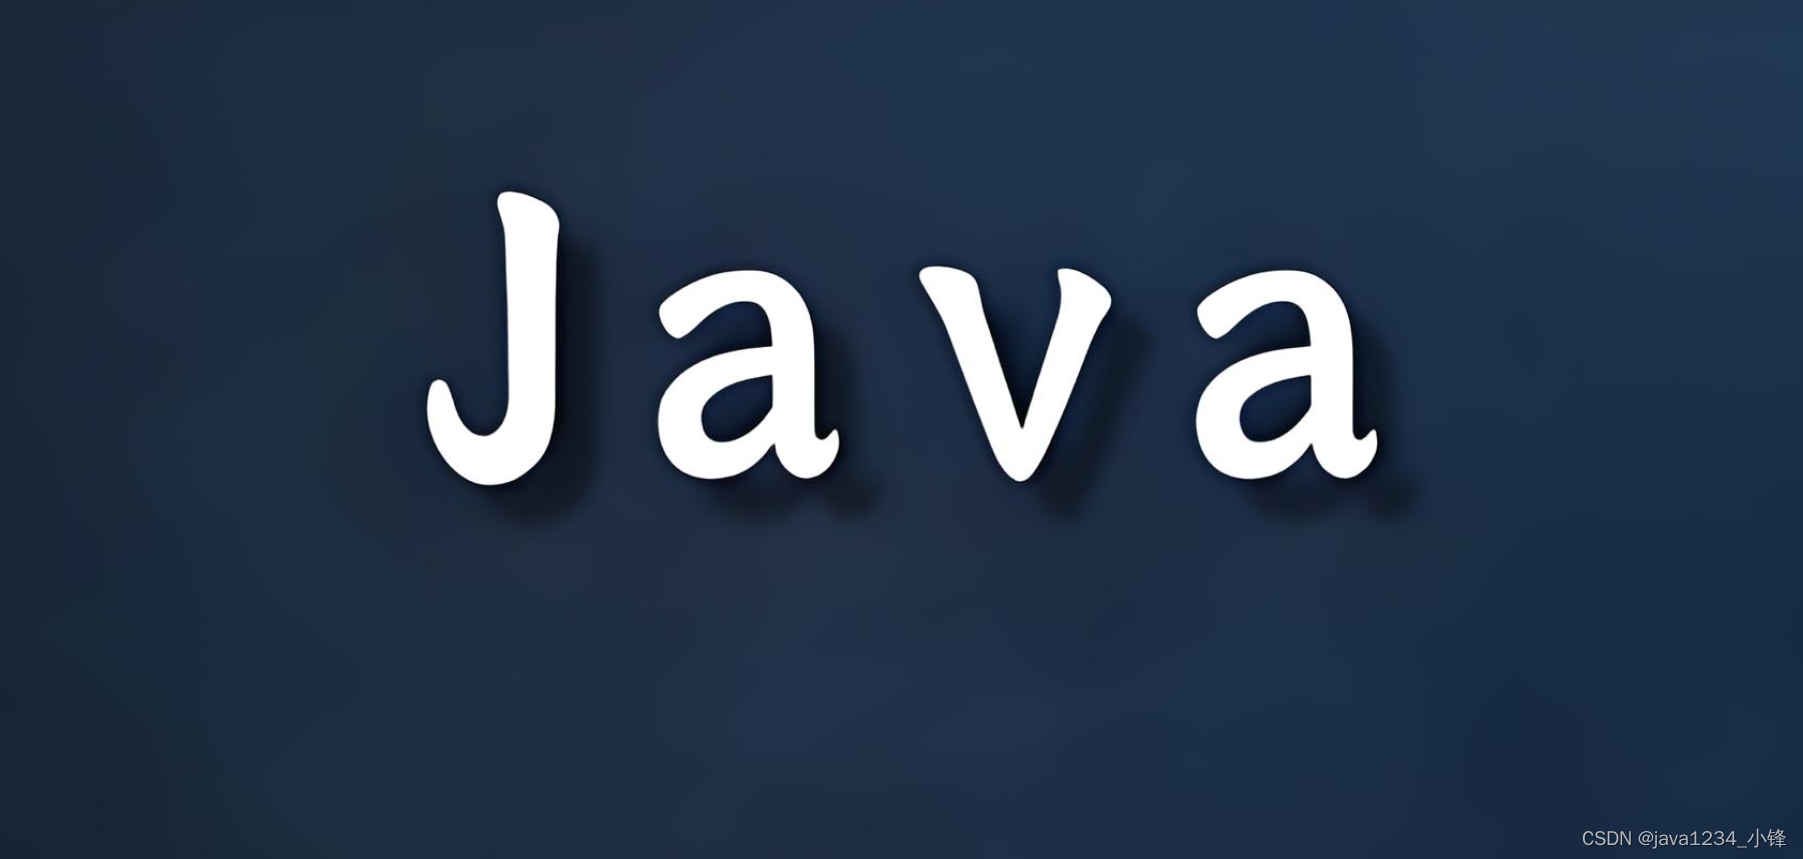 【吊打面试官系列】Java高并发篇 -为什么使用 Executor 框架比使用应用创建和管理线程好？